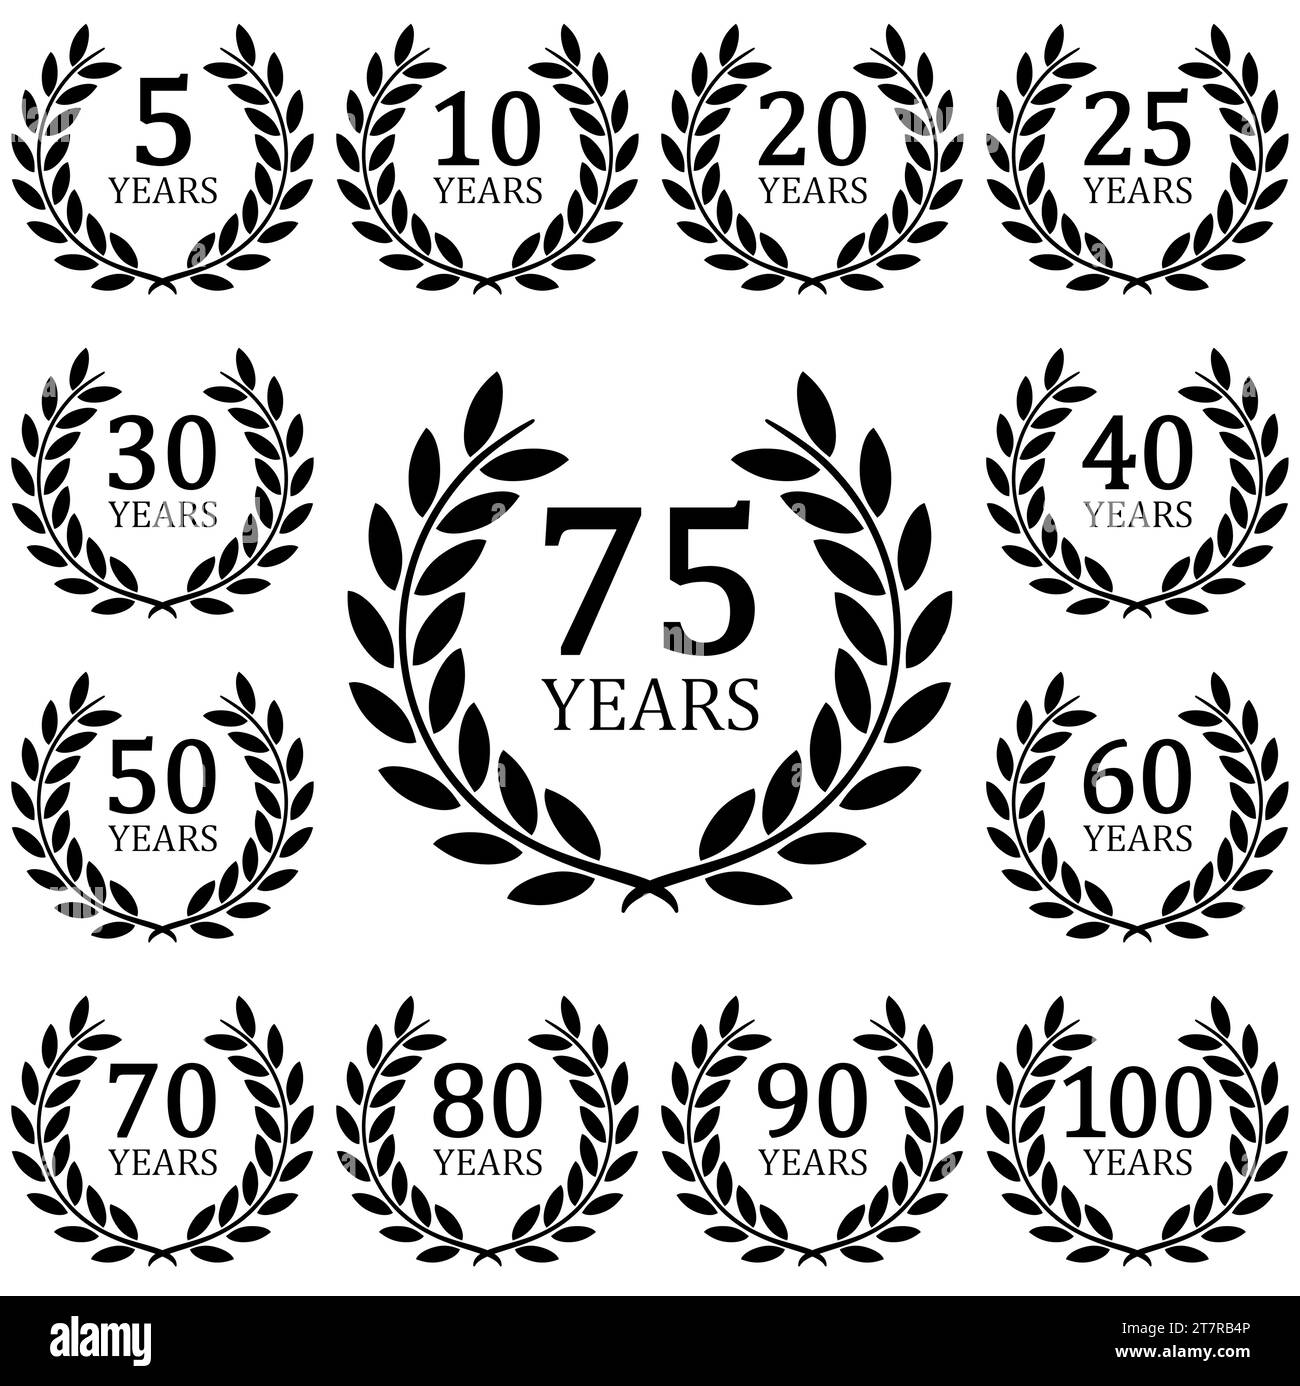 fichier vectoriel eps avec collection de couronne de laurier noir sur fond blanc pour le succès ou jubilé ferme avec texte de 5 à 100 ans Illustration de Vecteur